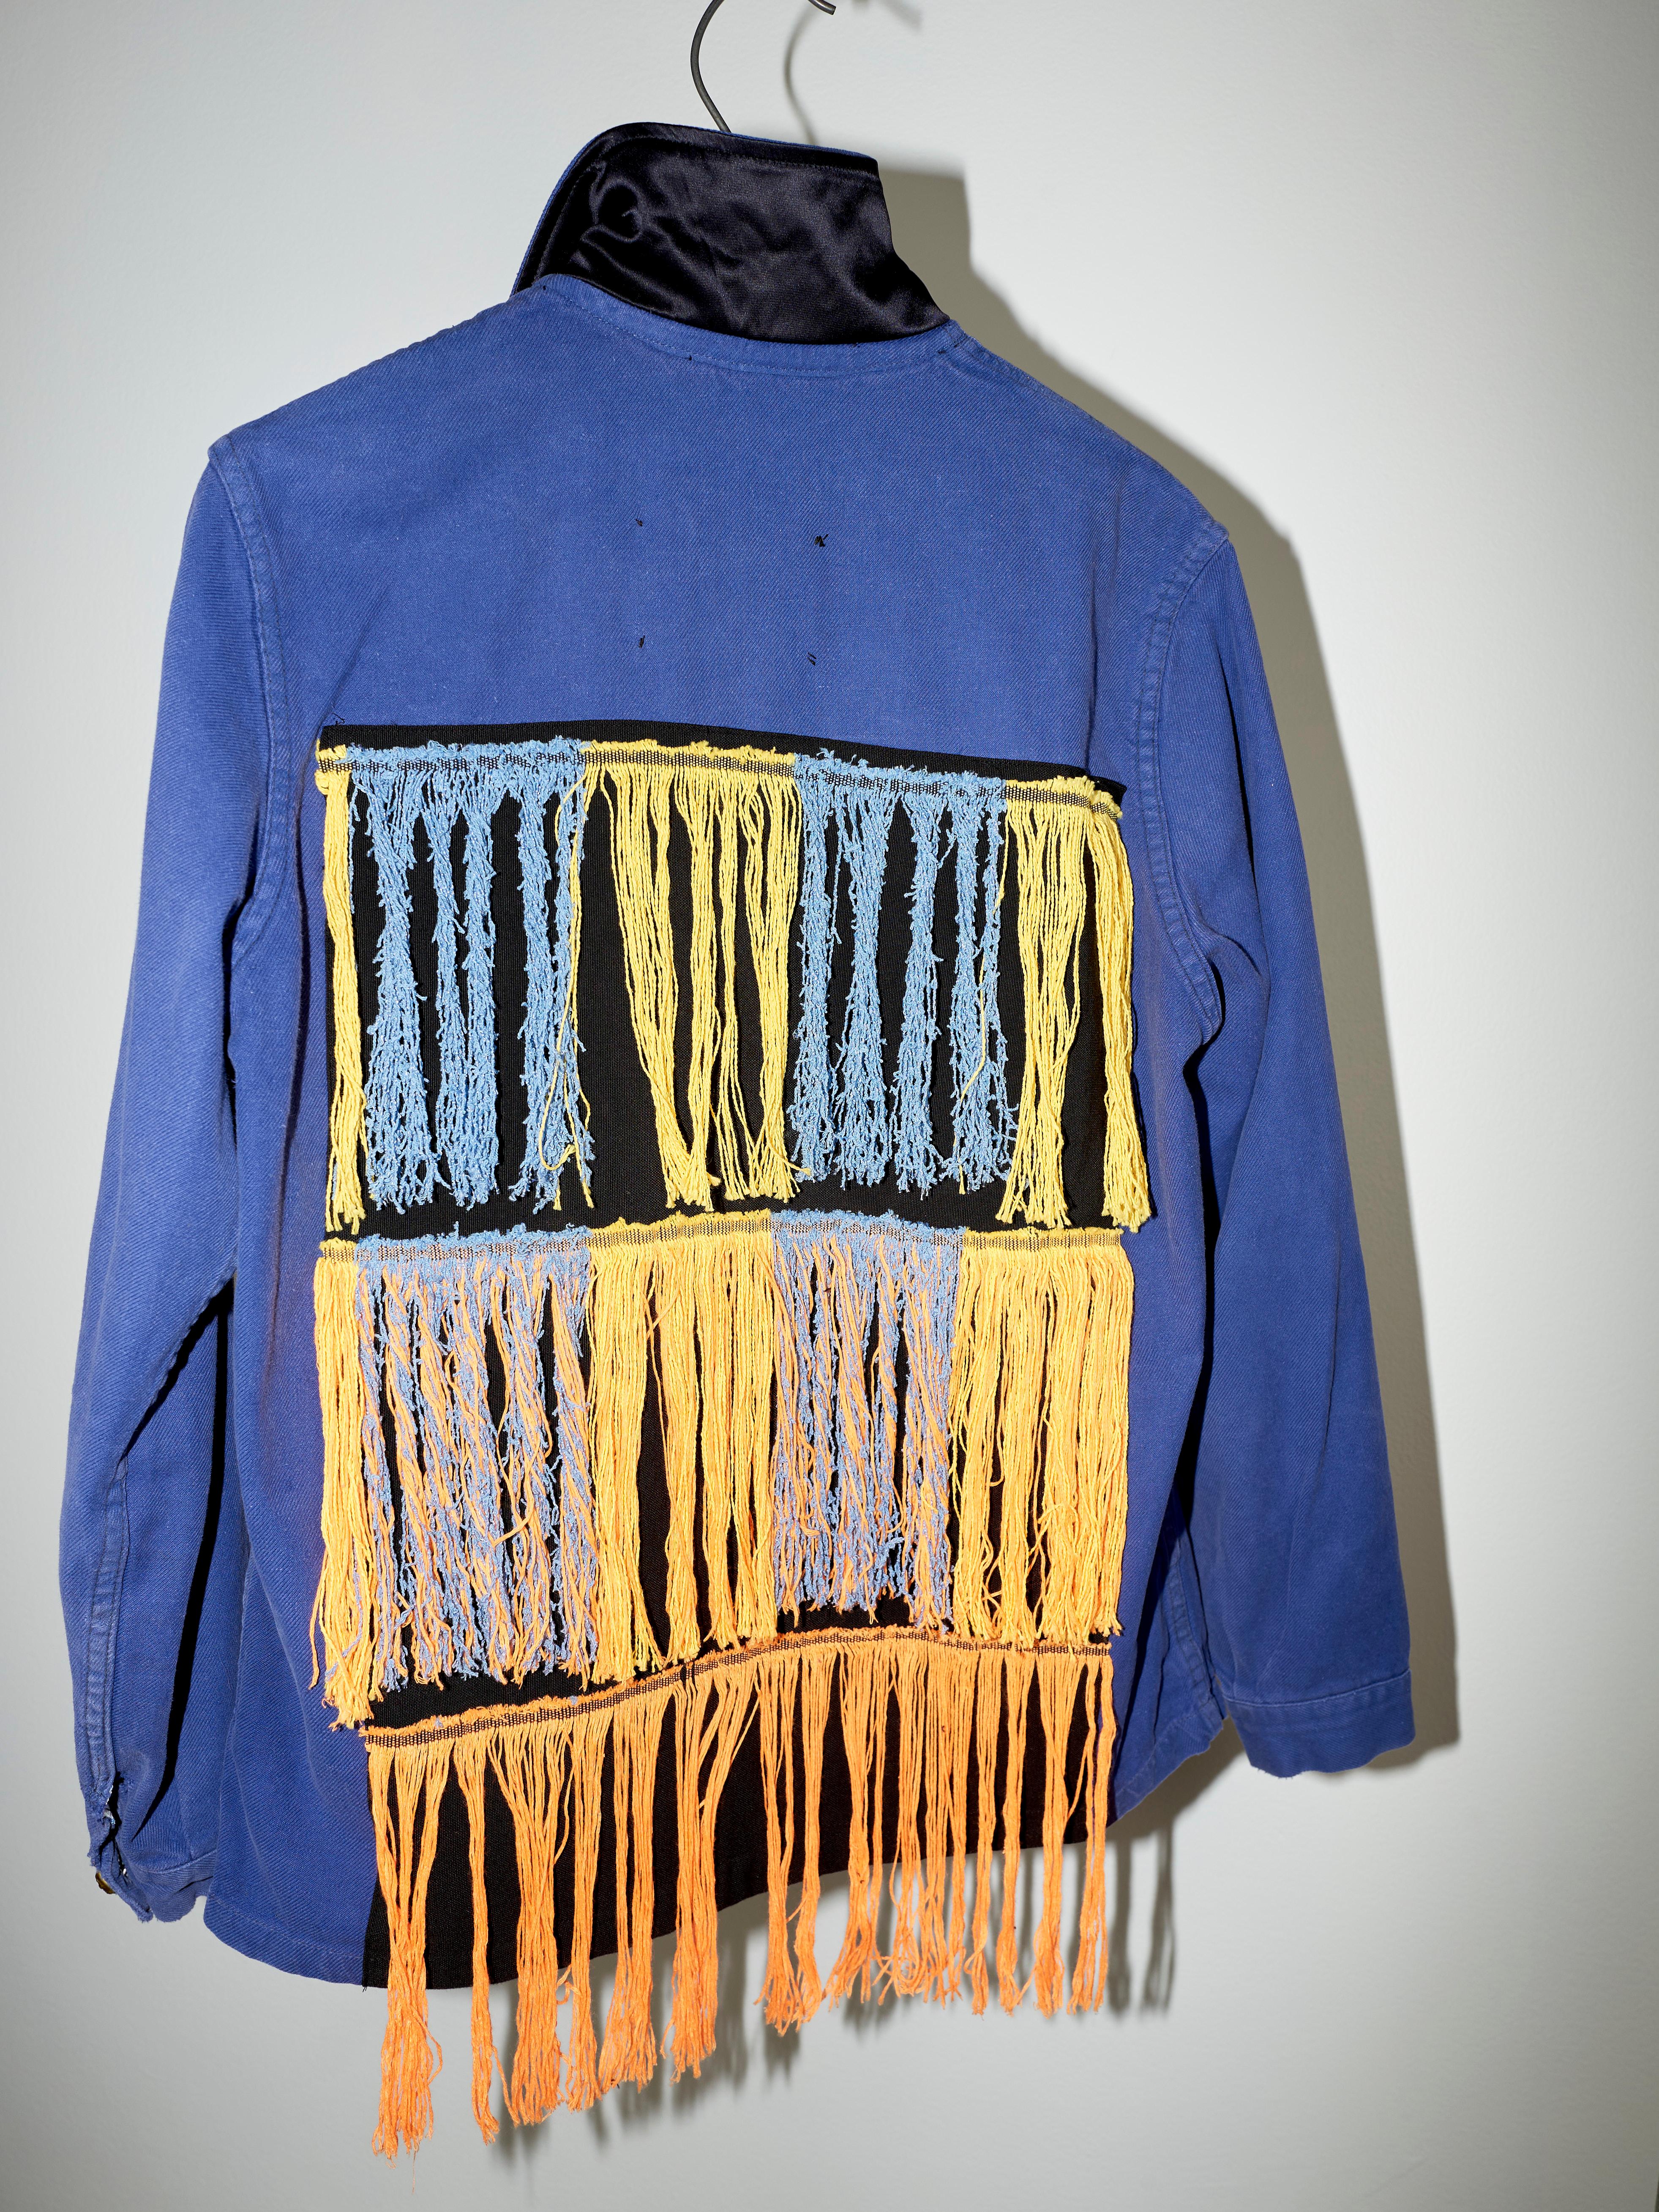 Embellished Fringe Jacket Blue Cotton French Work Wear  Small 3